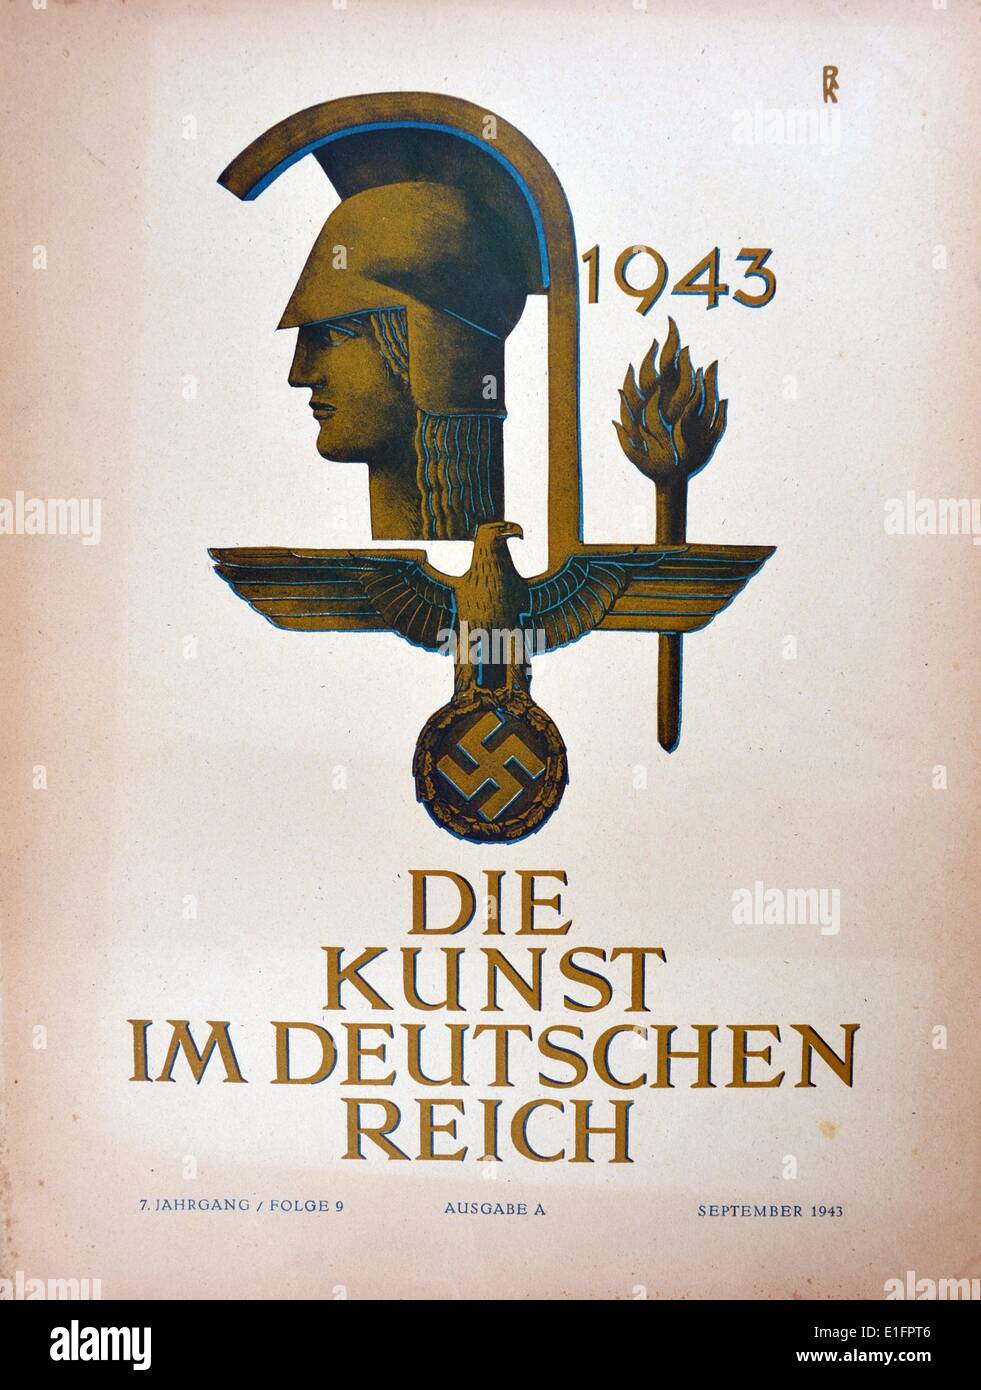 1943 Portada de 'Die Kunst im deutschen Reich' (Arte en el Reich alemán) fue publicado por primera vez en enero de 1937 por el gauleiter Adolf Wagnerand emitida posteriormente bajo la dirección de Adolf Hitler. Foto de stock